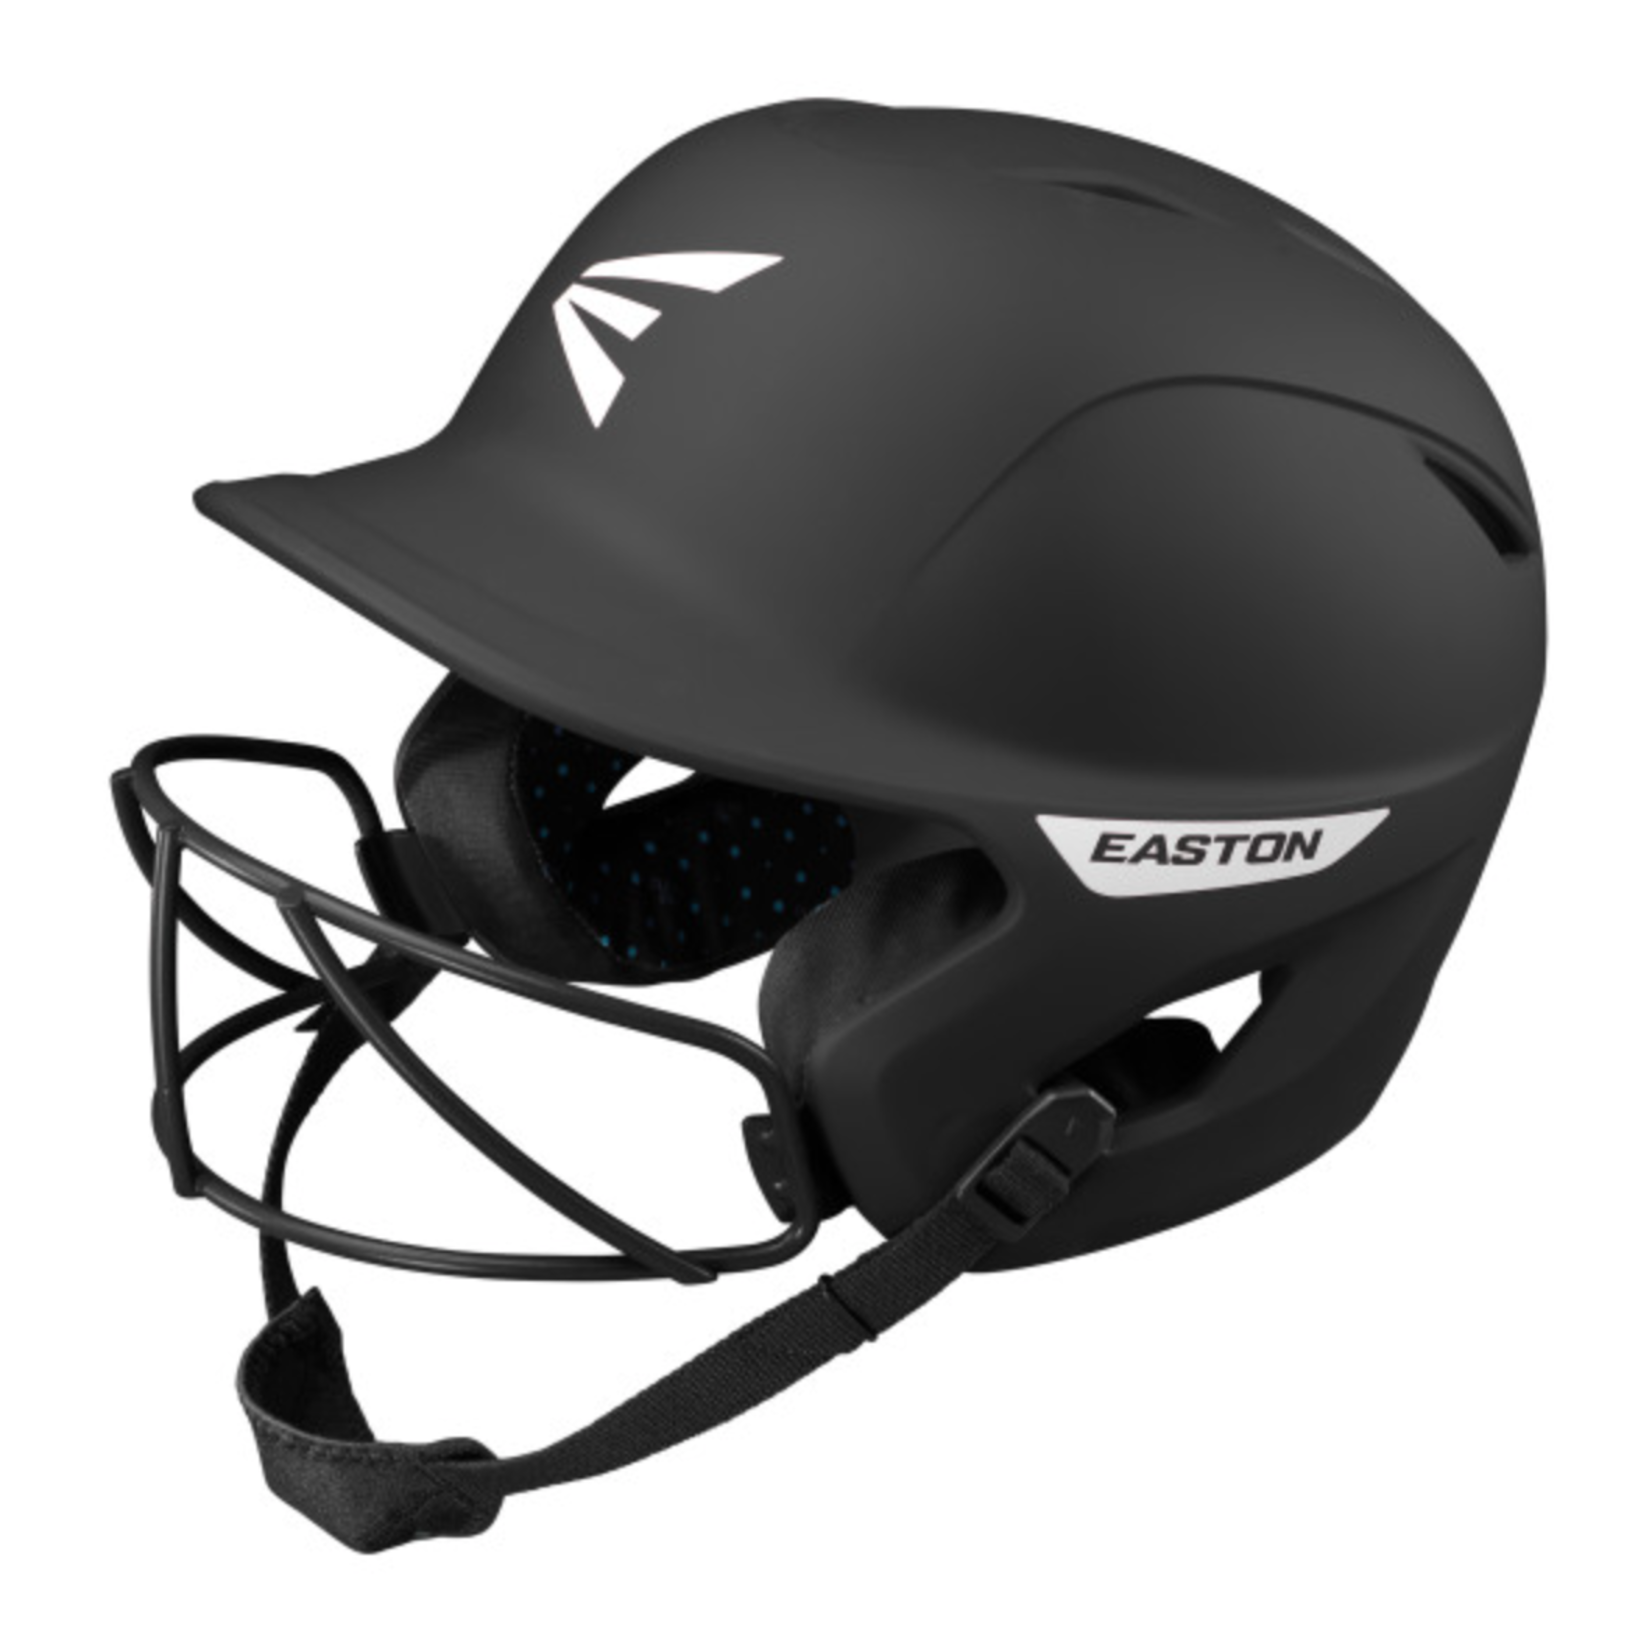 Easton Baseball S22 Ghost Matte Softball Batting Helmet w/ Cage